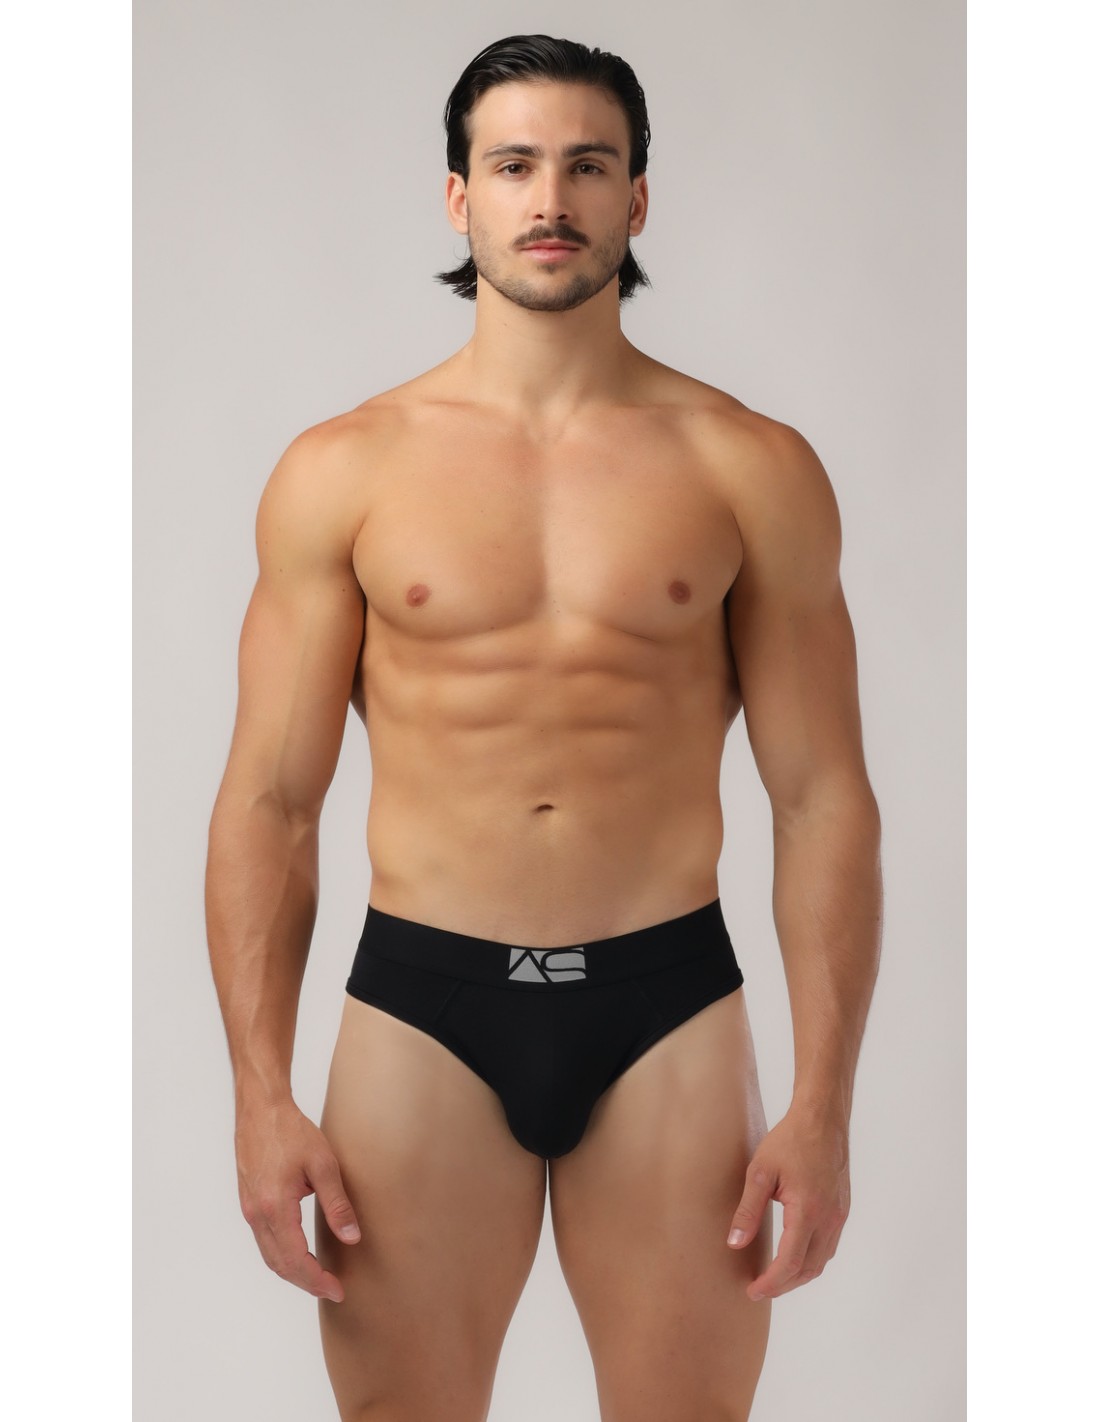 https://menandunderwear.com/shop/2576-thickbox_default/adam-smith-exclusive-briefs-black.jpg